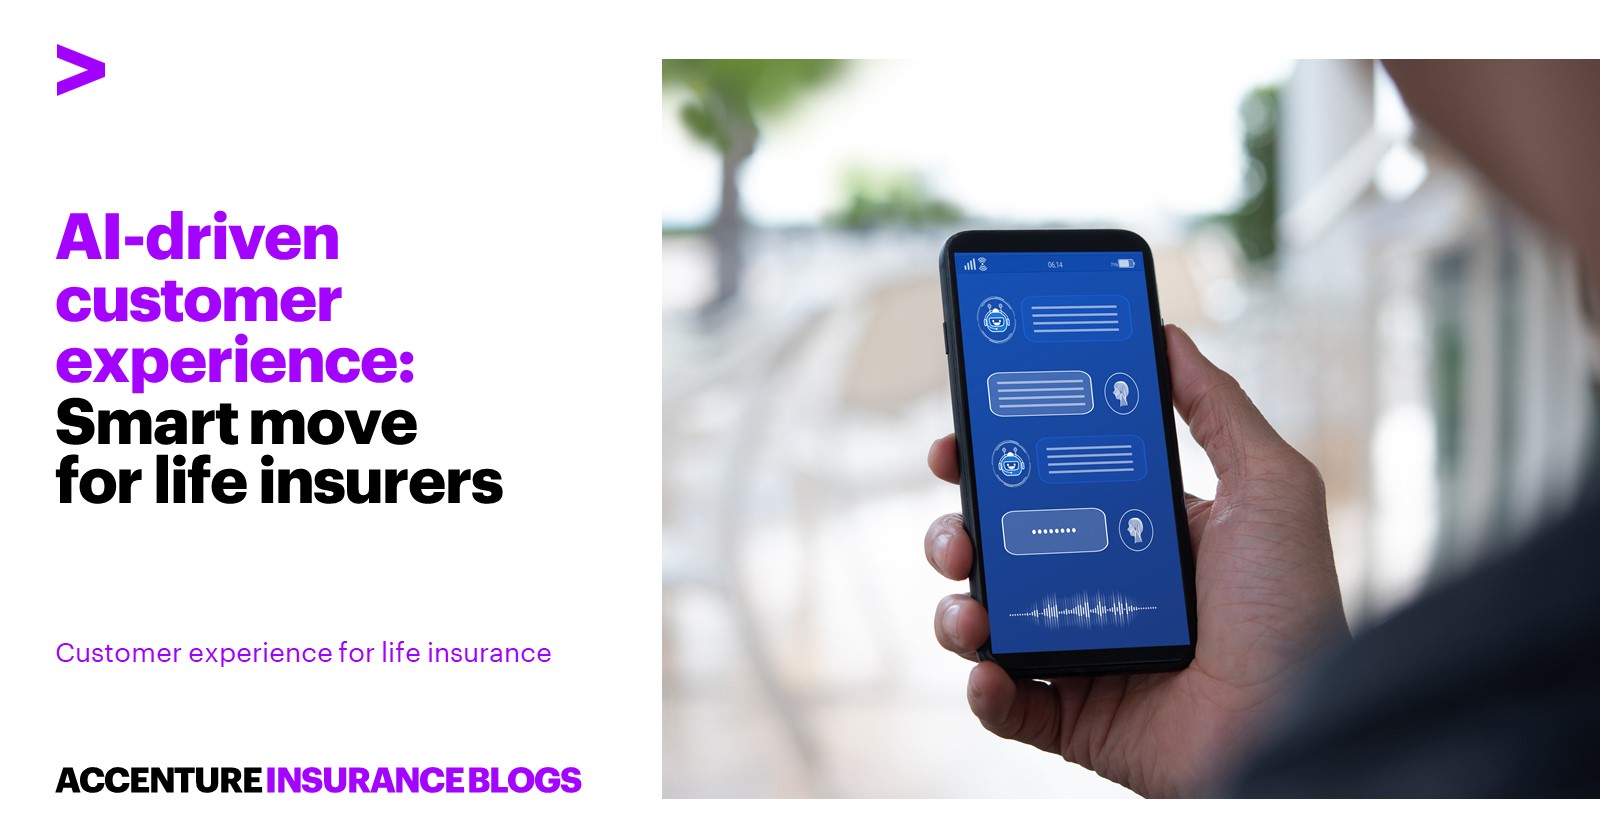 एआई-संचालित ग्राहक अनुभव: जीवन बीमाकर्ताओं के लिए स्मार्ट कदम – एक्सेंचर इंश्योरेंस ब्लॉग